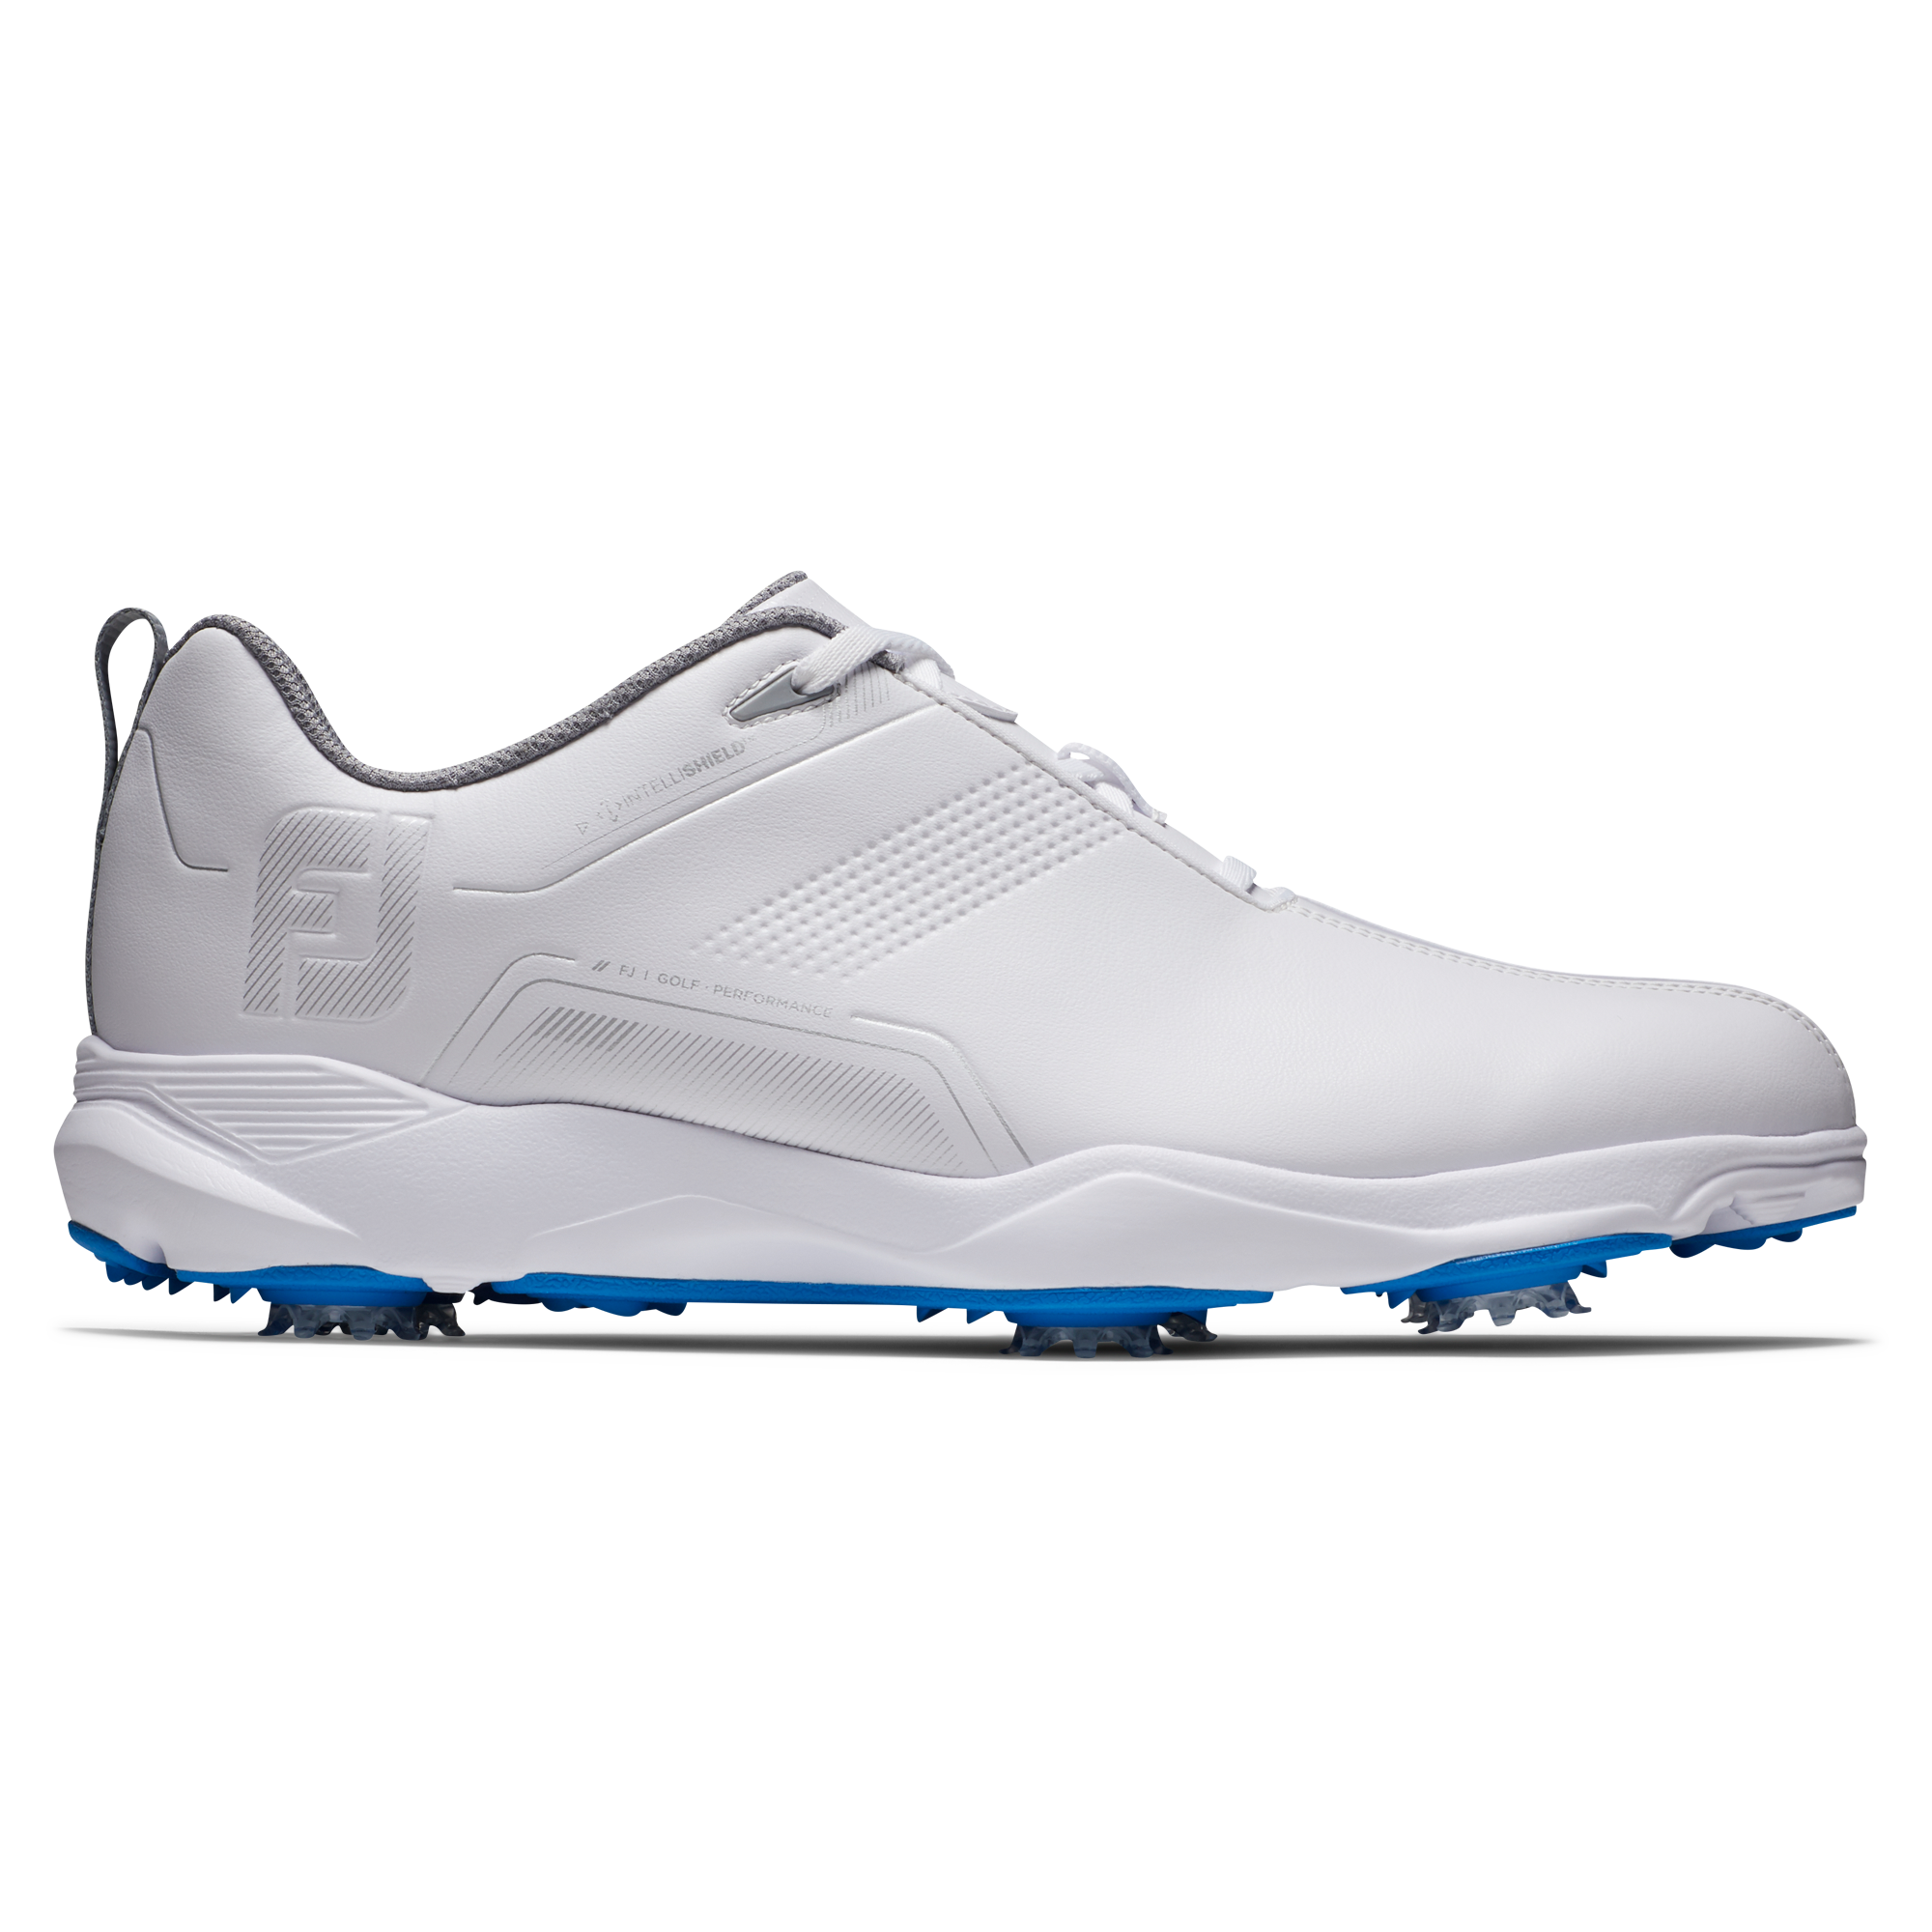 FootJoy eComfort pánské golfové boty, bílé/šedé, vel. 7,5 UK